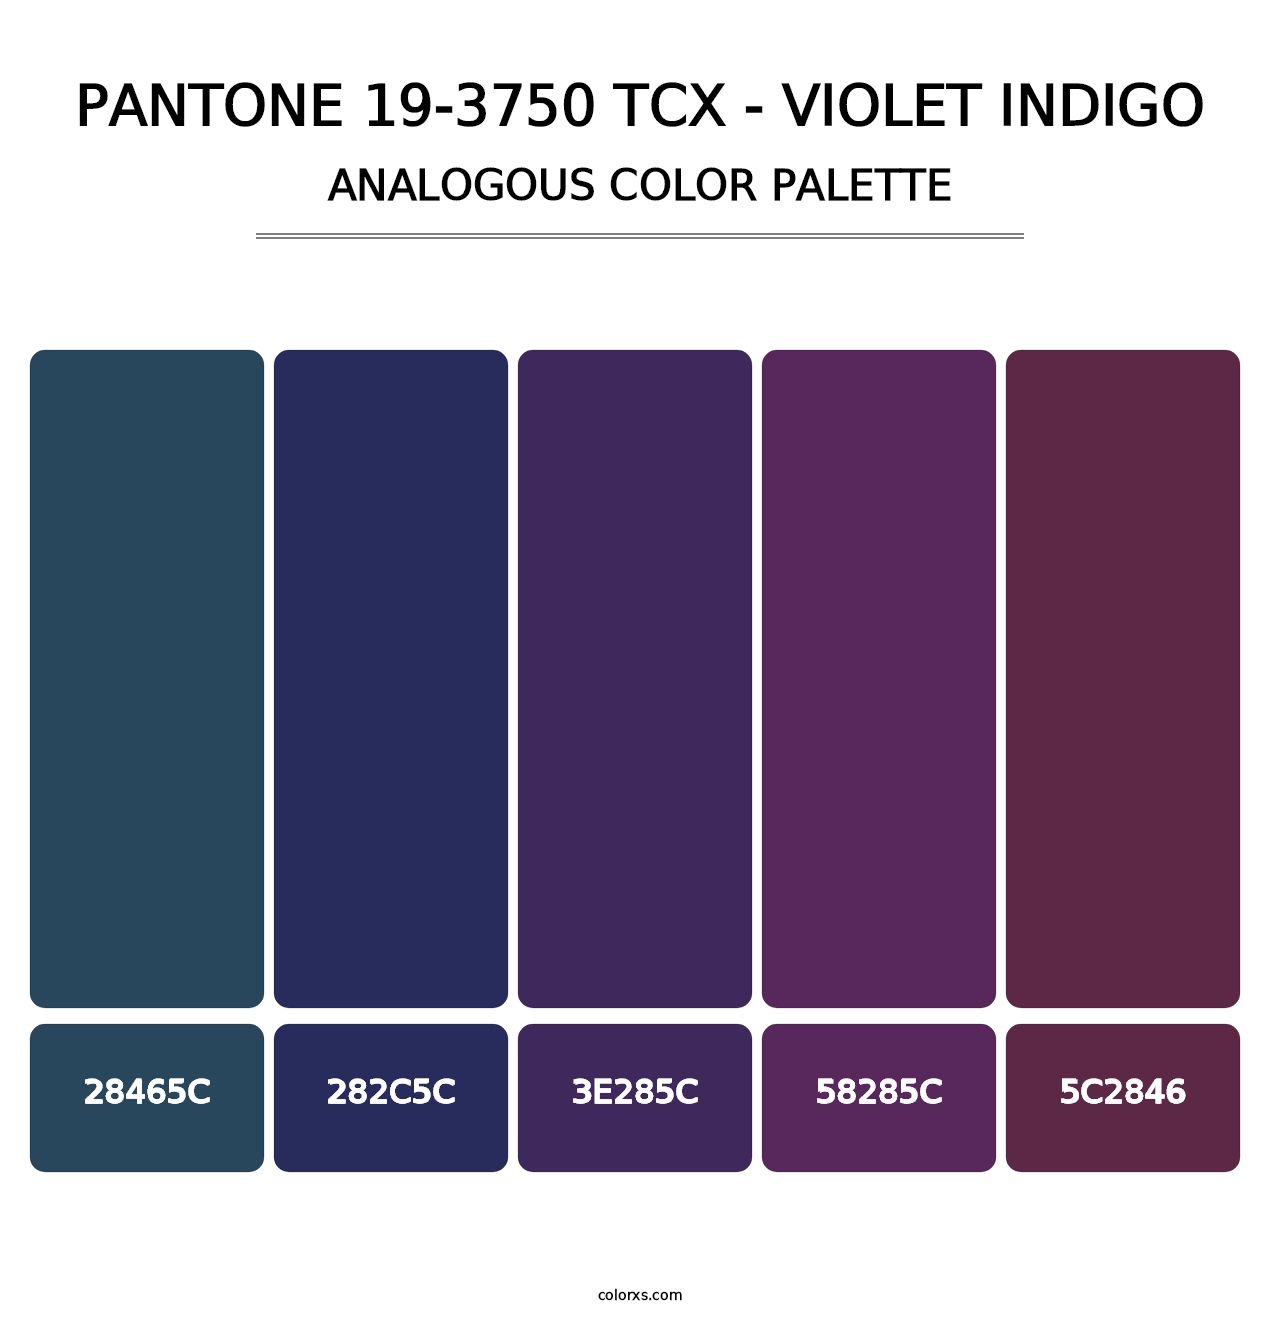 PANTONE 19-3750 TCX - Violet Indigo - Analogous Color Palette